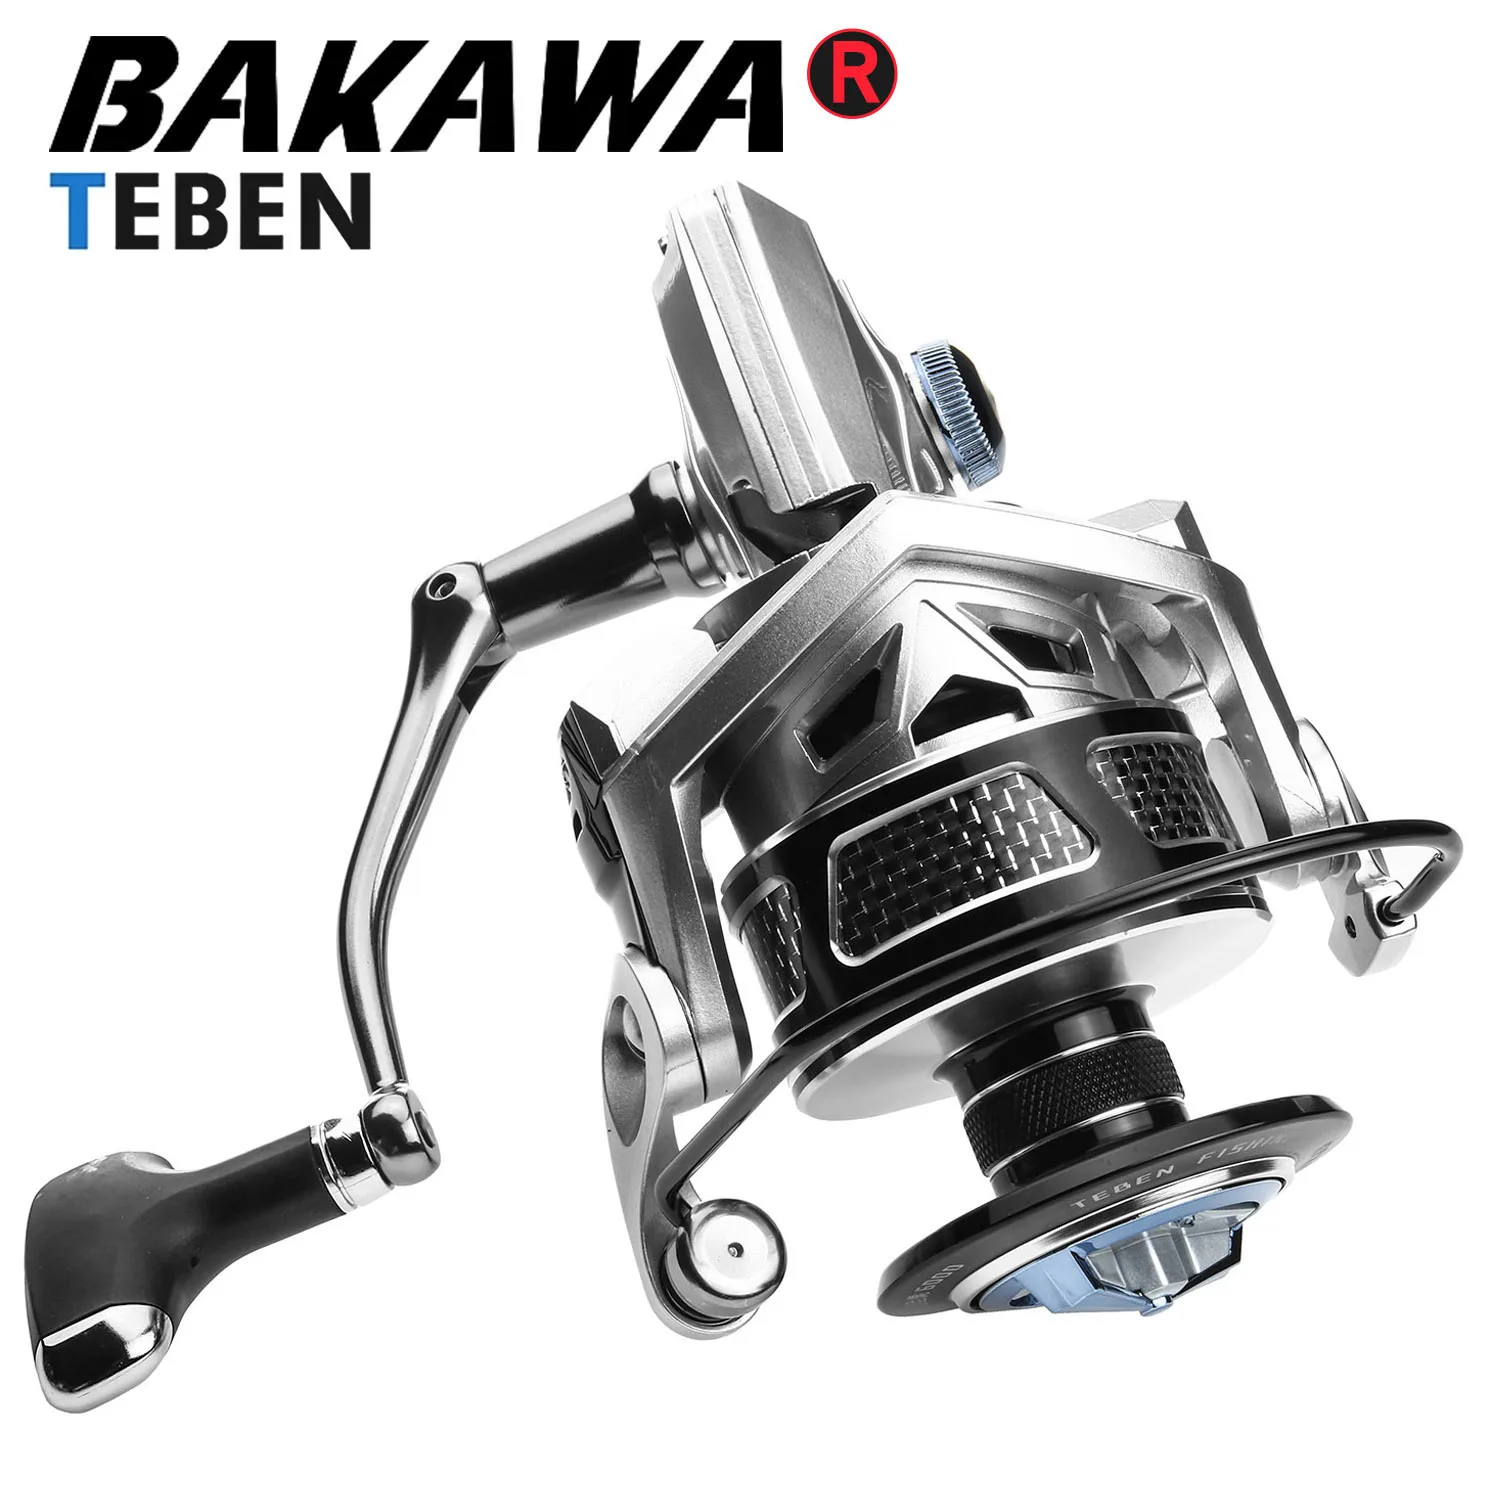 

BAKAWA Spinning Fishing Reel 15-20kg Max Drag 5+1BB Gear Ratio 5.2:1/4.9:1 TEBEN 2000-6000 Series Saltwater/Freshwater Wheel